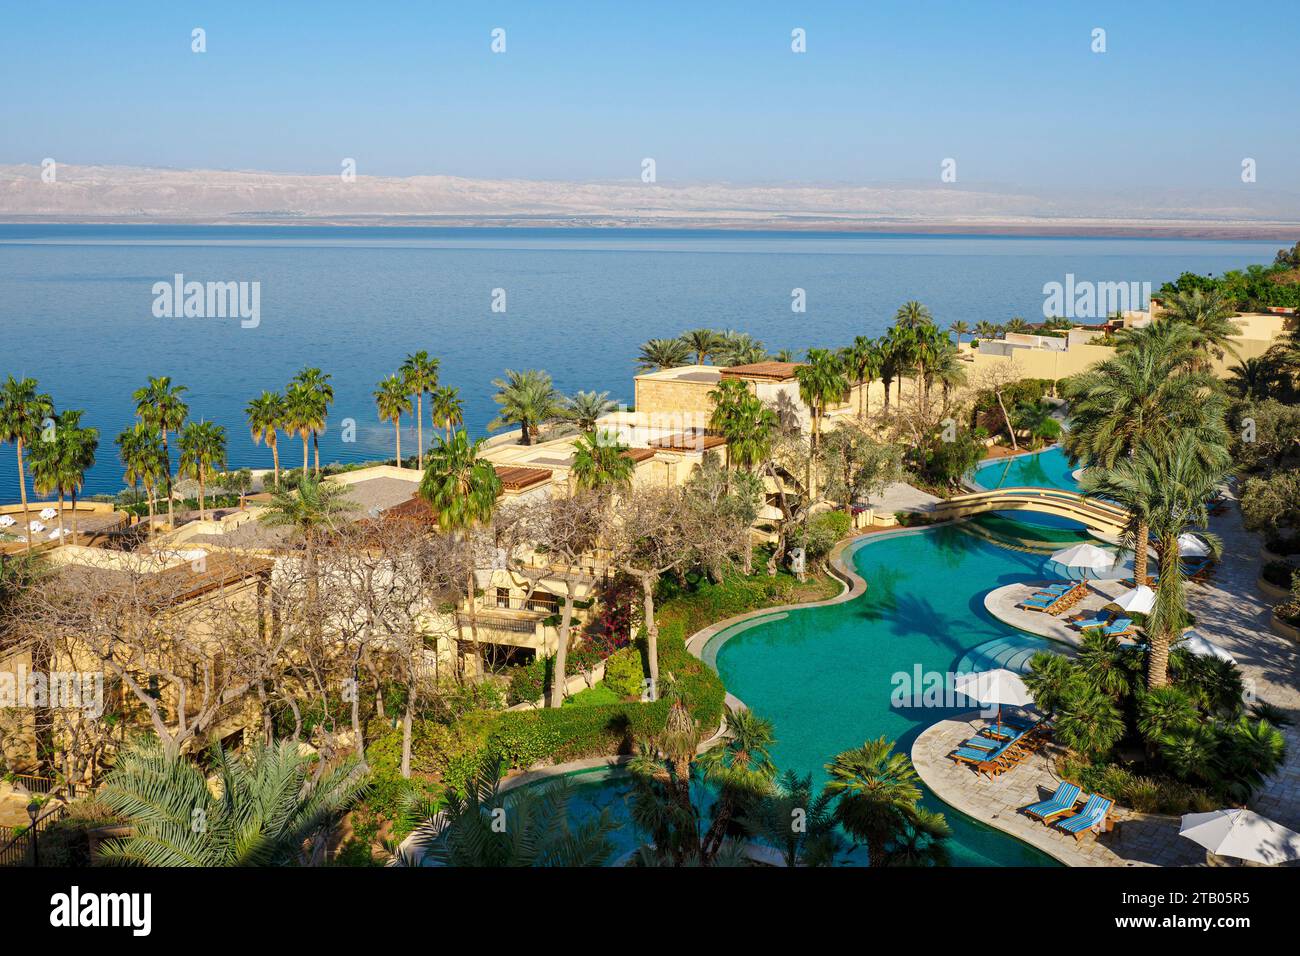 Kempinski Hotel Ishtar, un complejo de lujo de 5 estrellas junto al Mar Muerto inspirado en los jardines colgantes de Babilonia, Jordania. Foto de stock